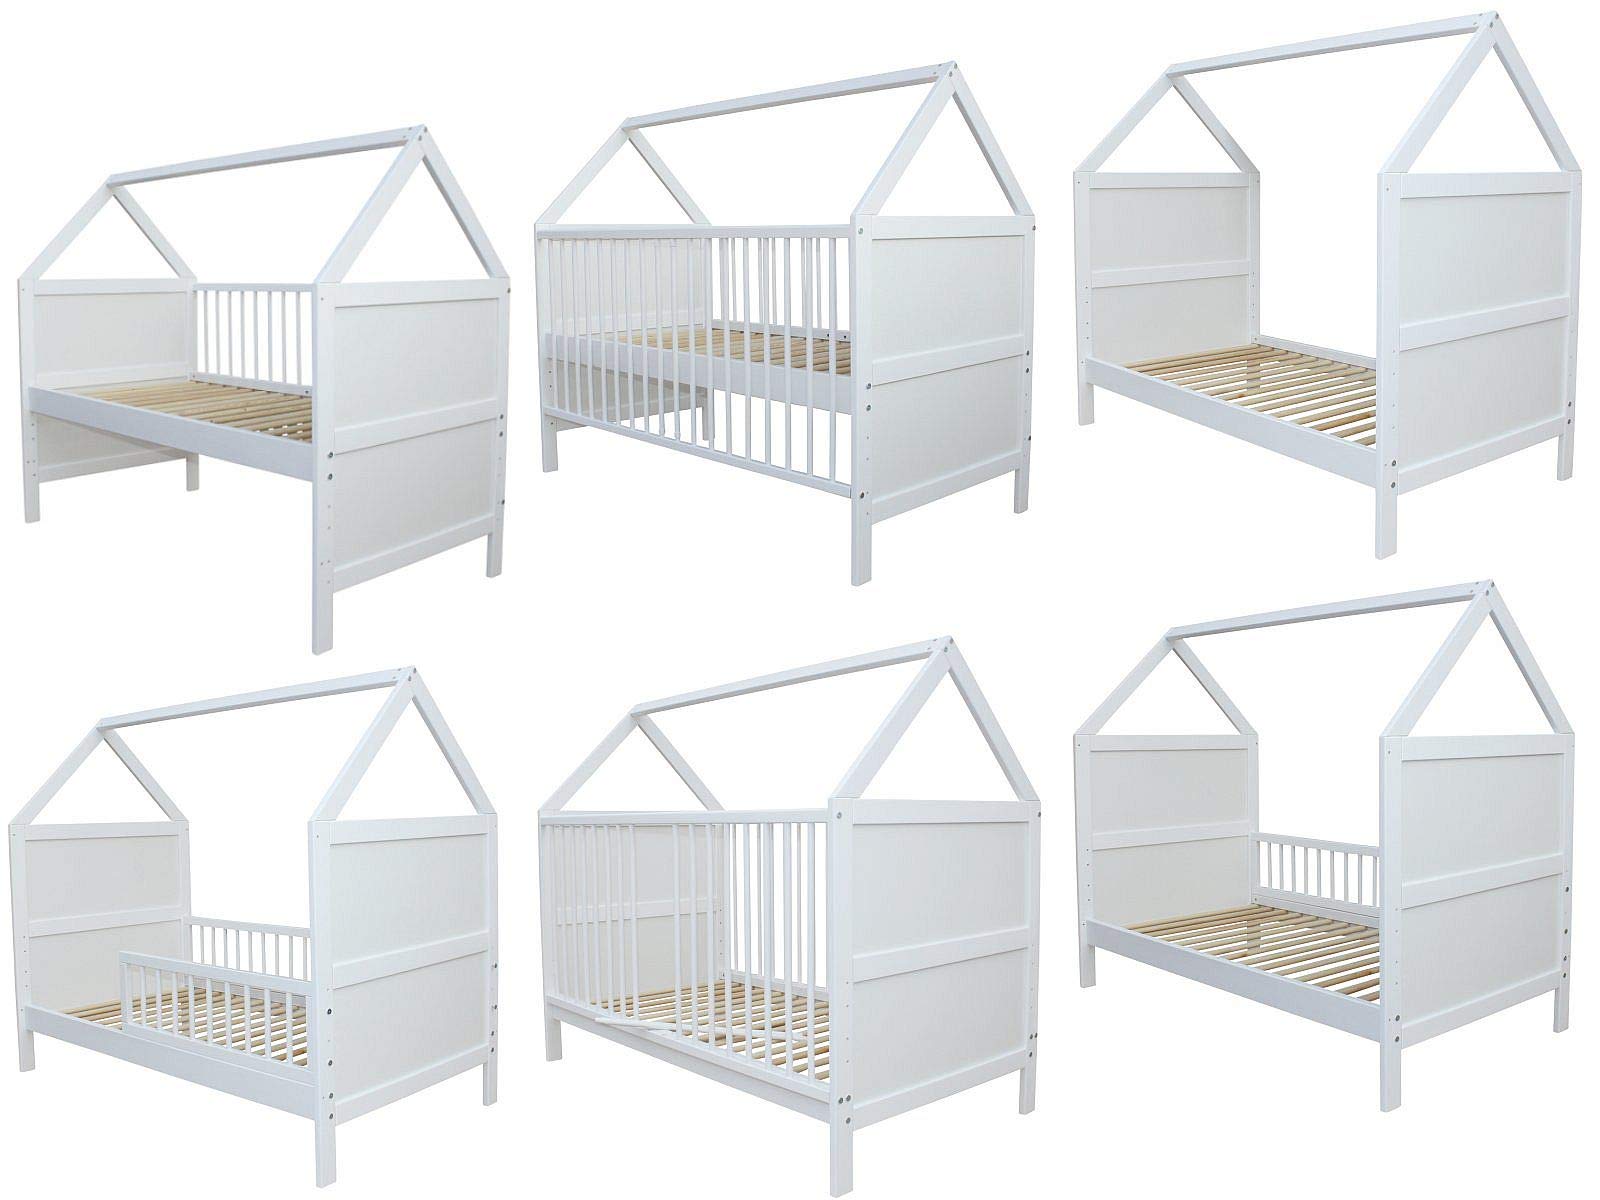 Micoland Babybett Kinderbett Juniorbett Bett Haus 140 x 70cm massiv Weiss 0 bis 6 Jahren